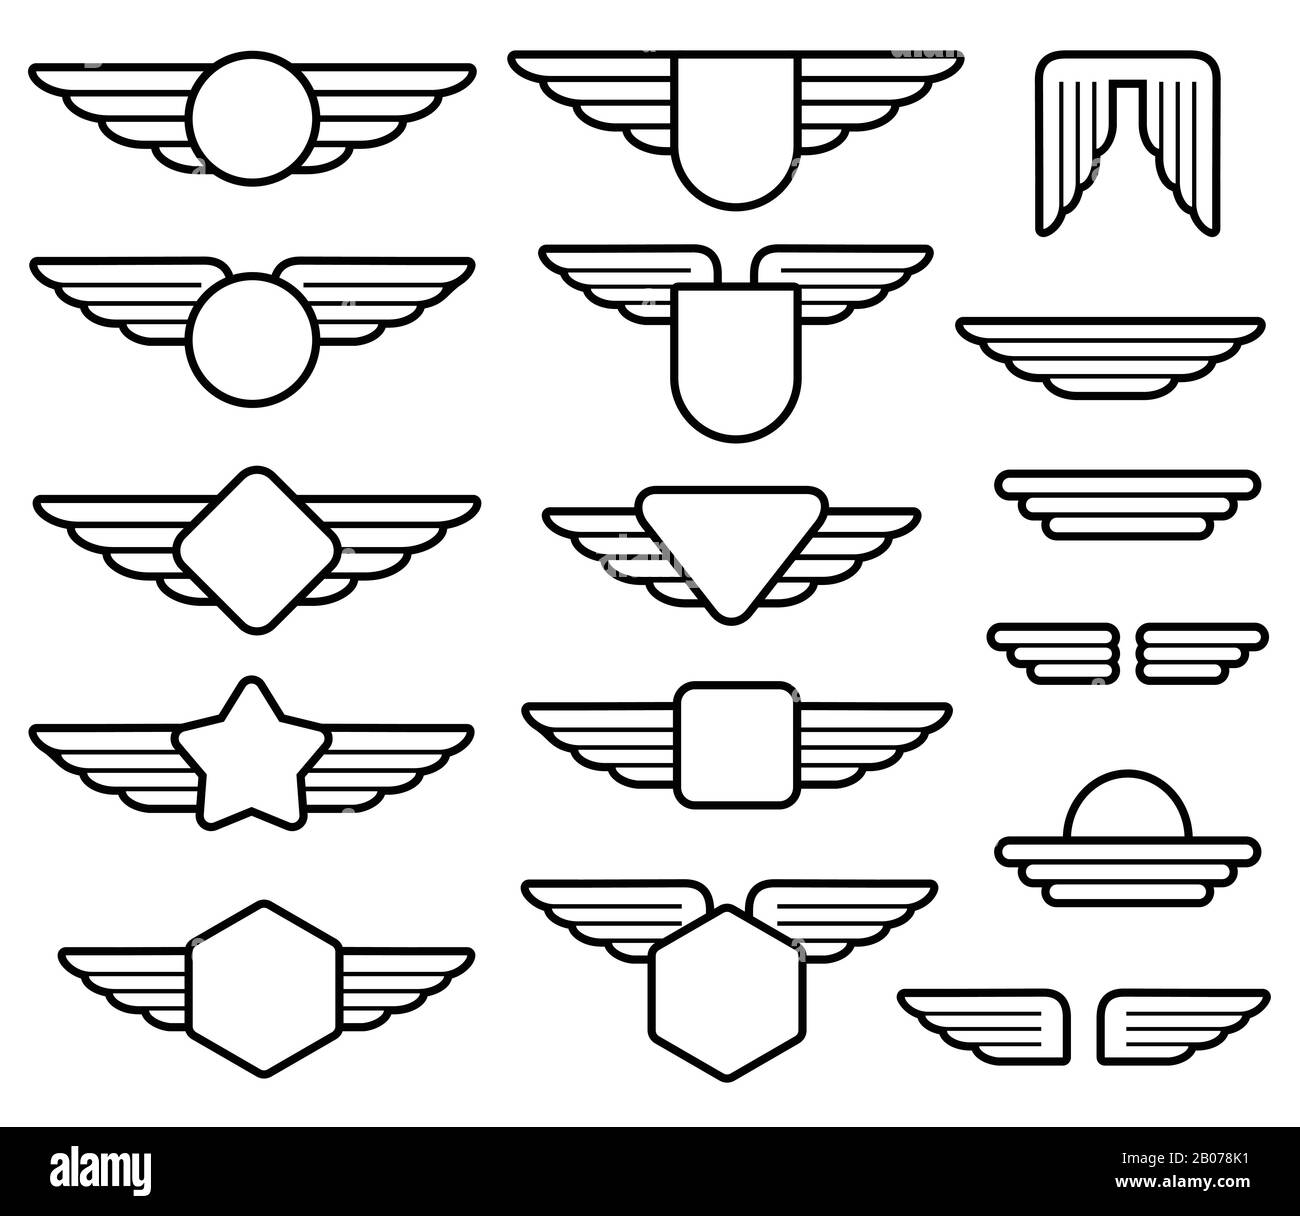 Insignias del ejército. conjunto de parches militares, letrero de capitán  de la fuerza aérea y distintivos de insignia de paracaidista